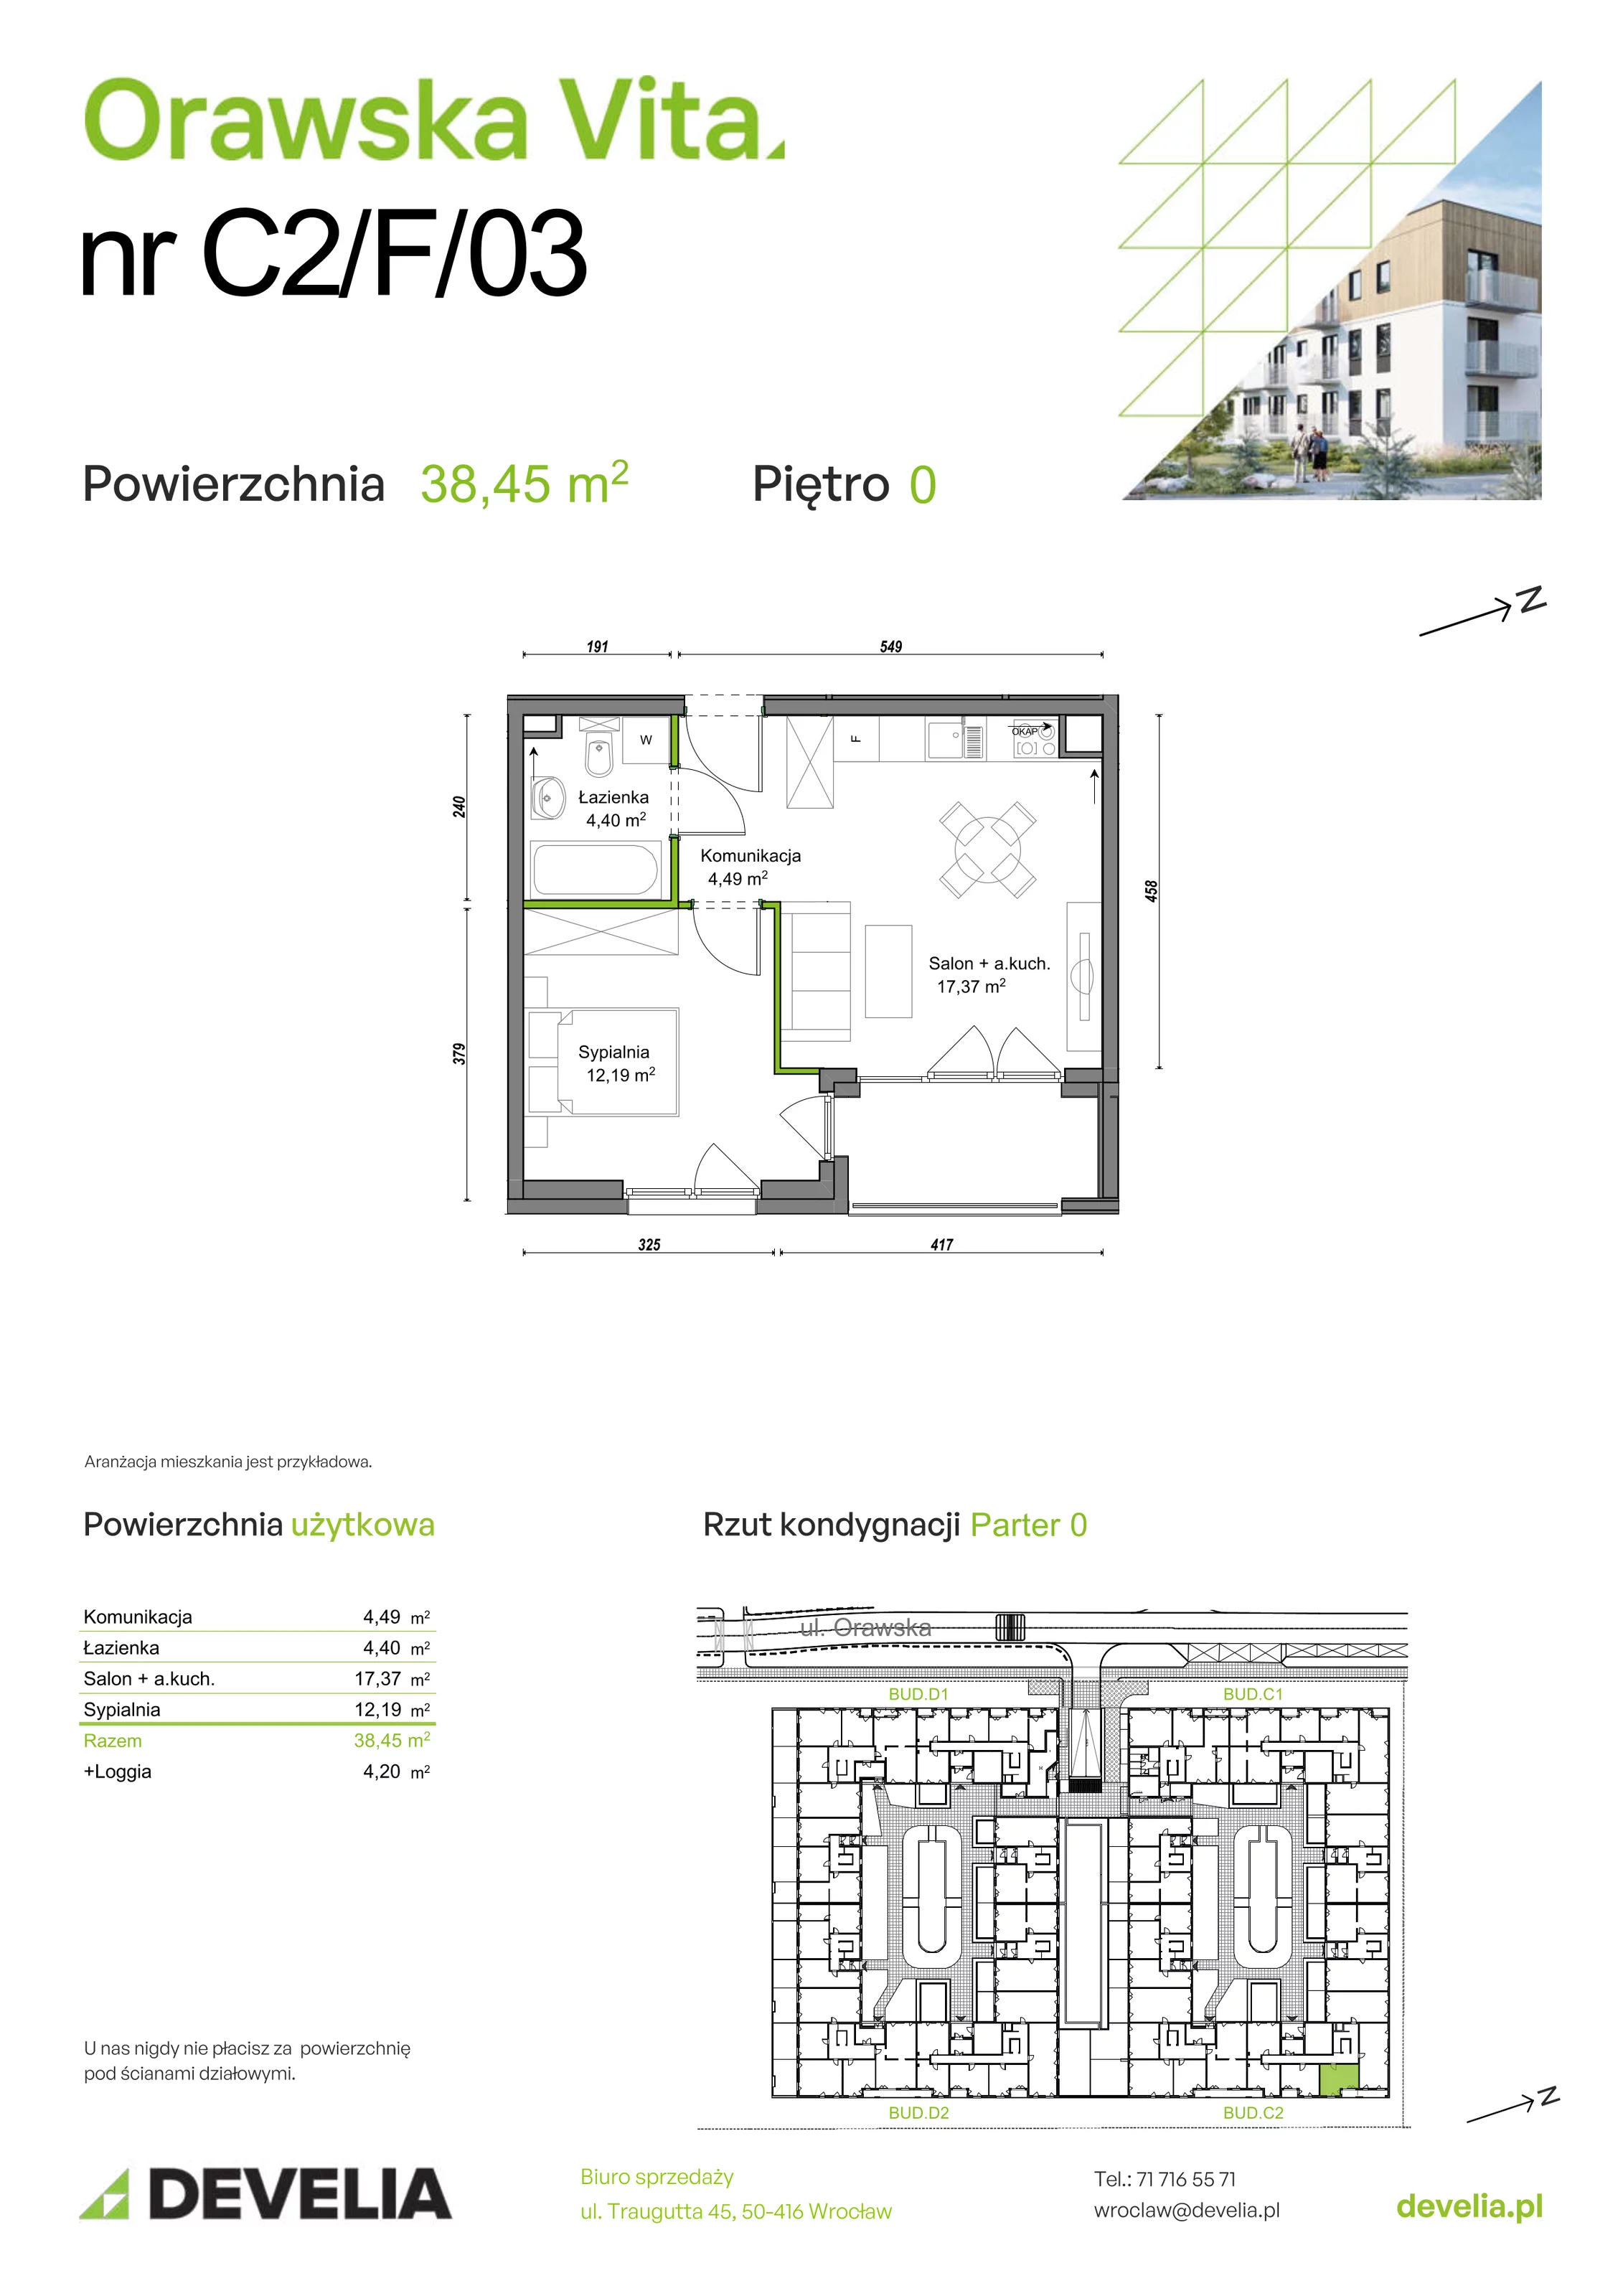 Mieszkanie 38,45 m², parter, oferta nr C2/F/03, Orawska Vita, Wrocław, Ołtaszyn, Krzyki, ul. Orawska 73